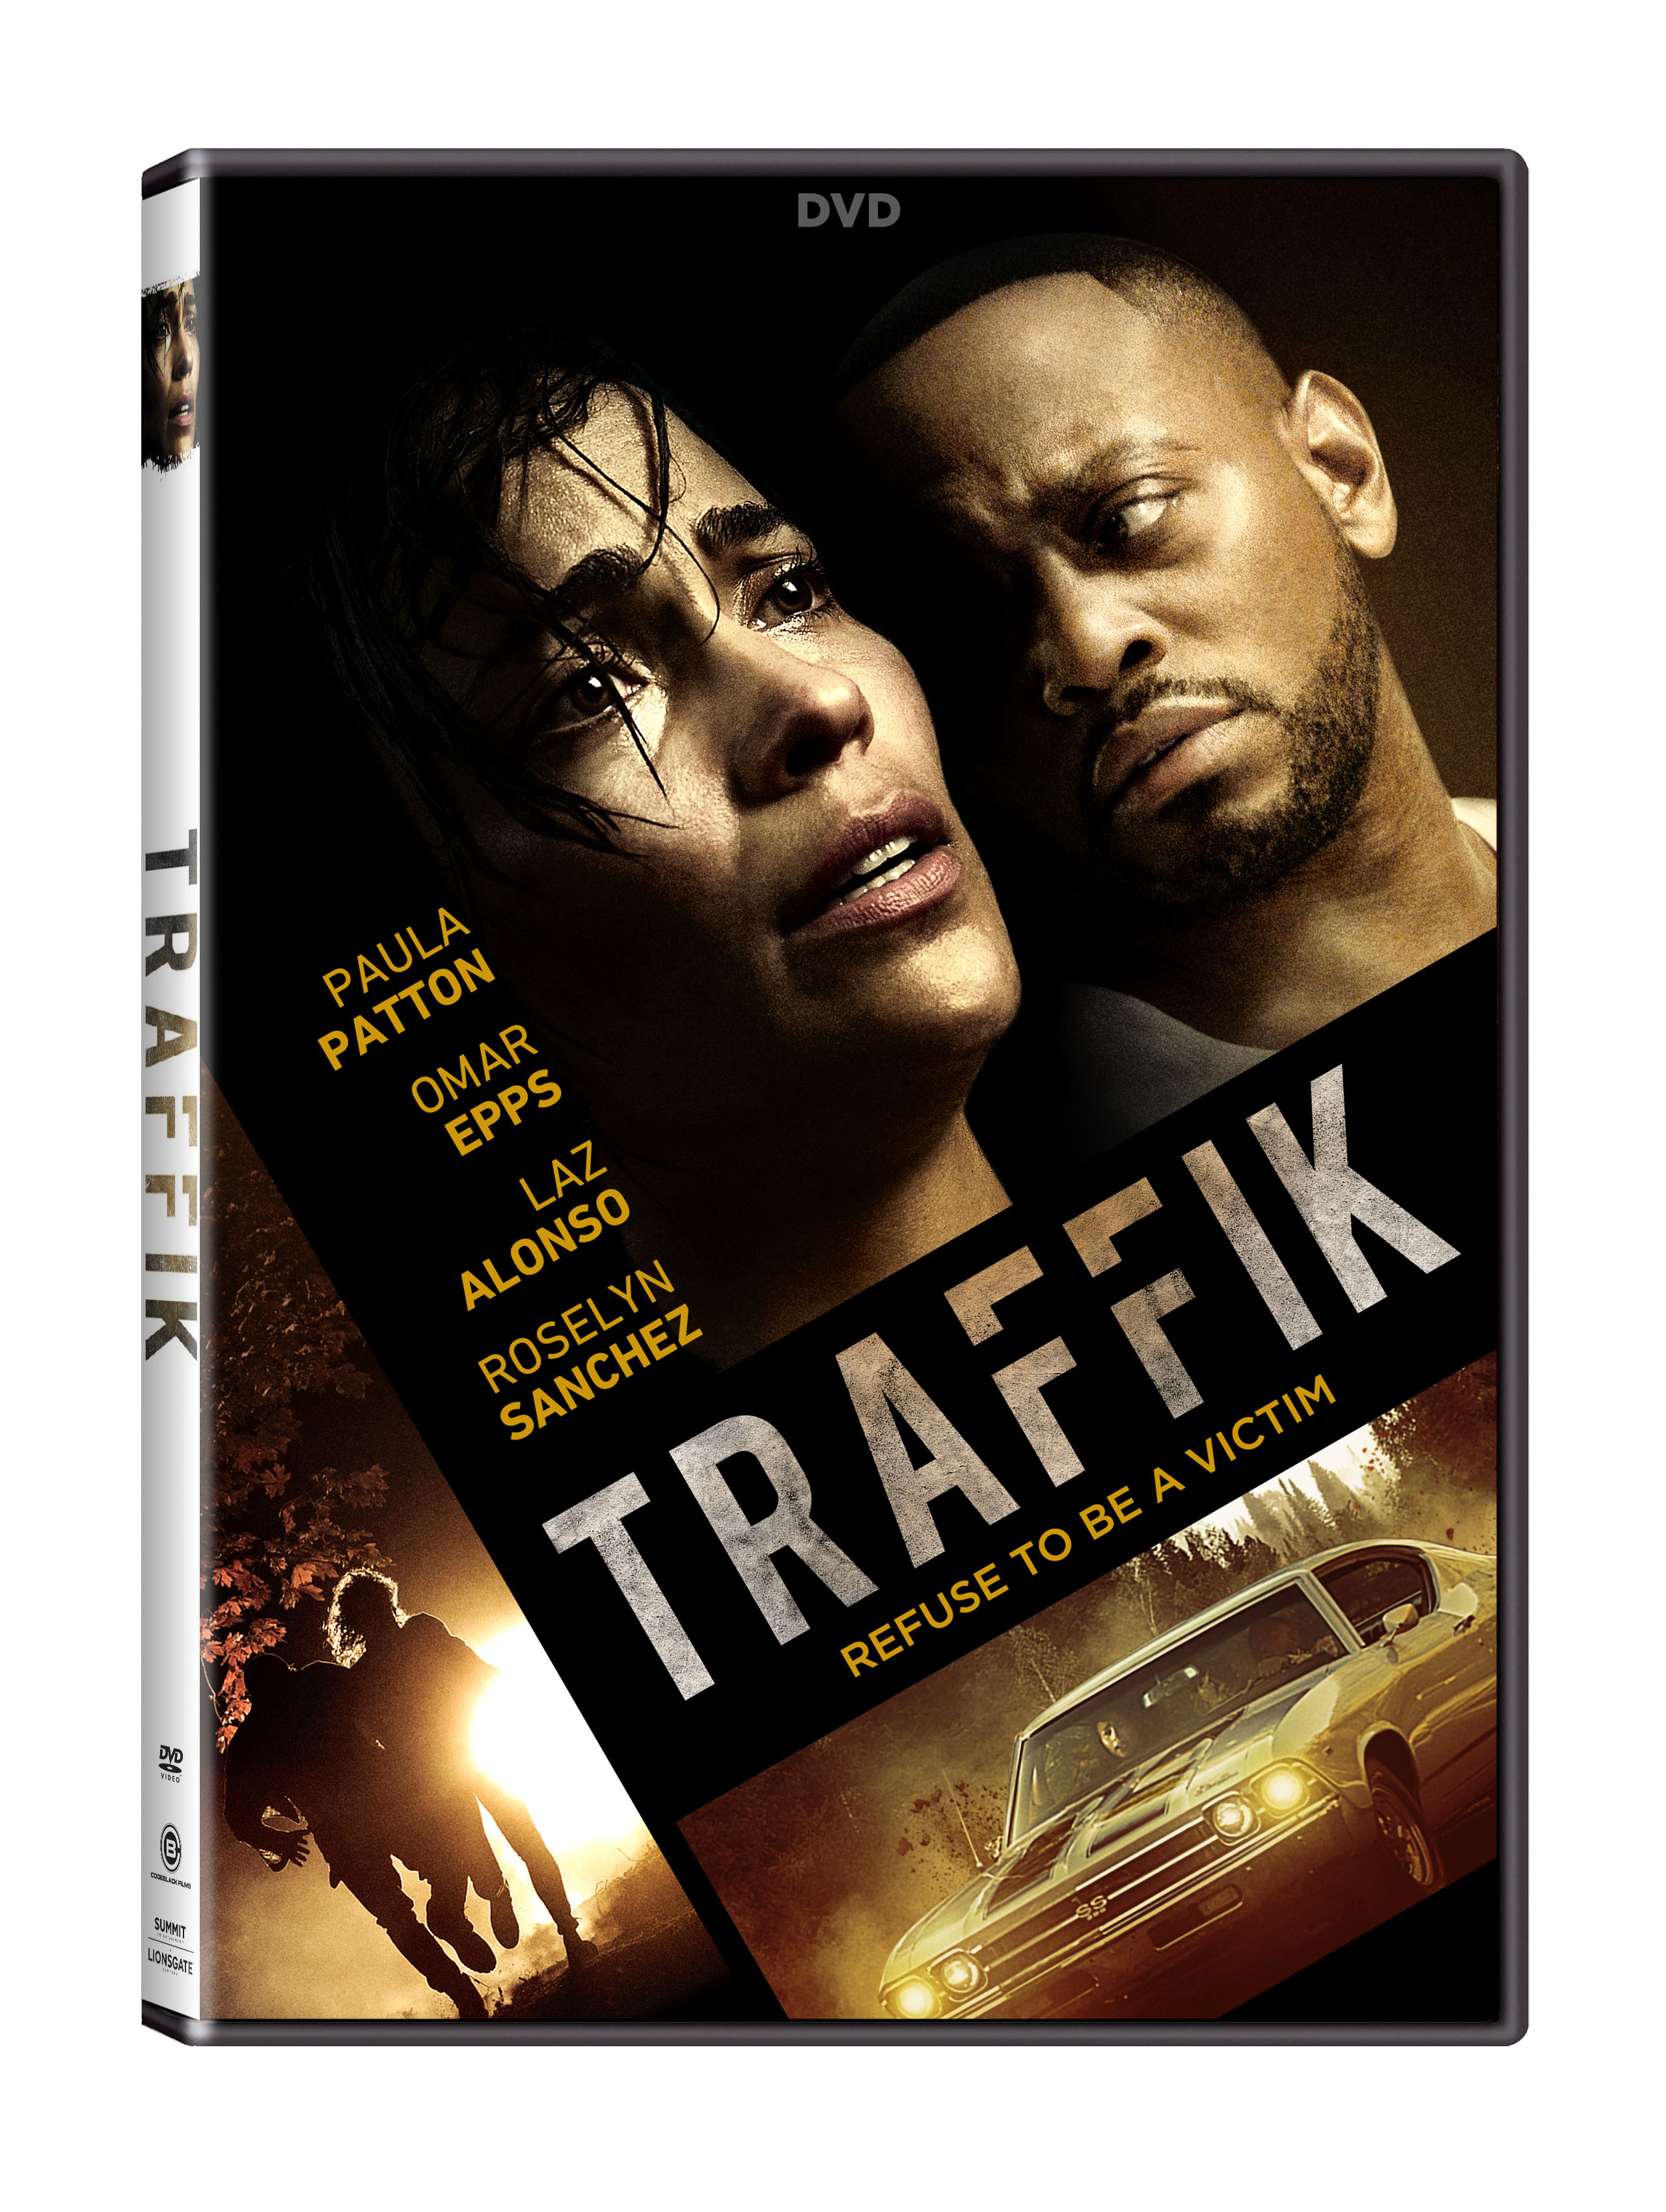 Traffik DVD cover (Lionsgate Home Entertainment)